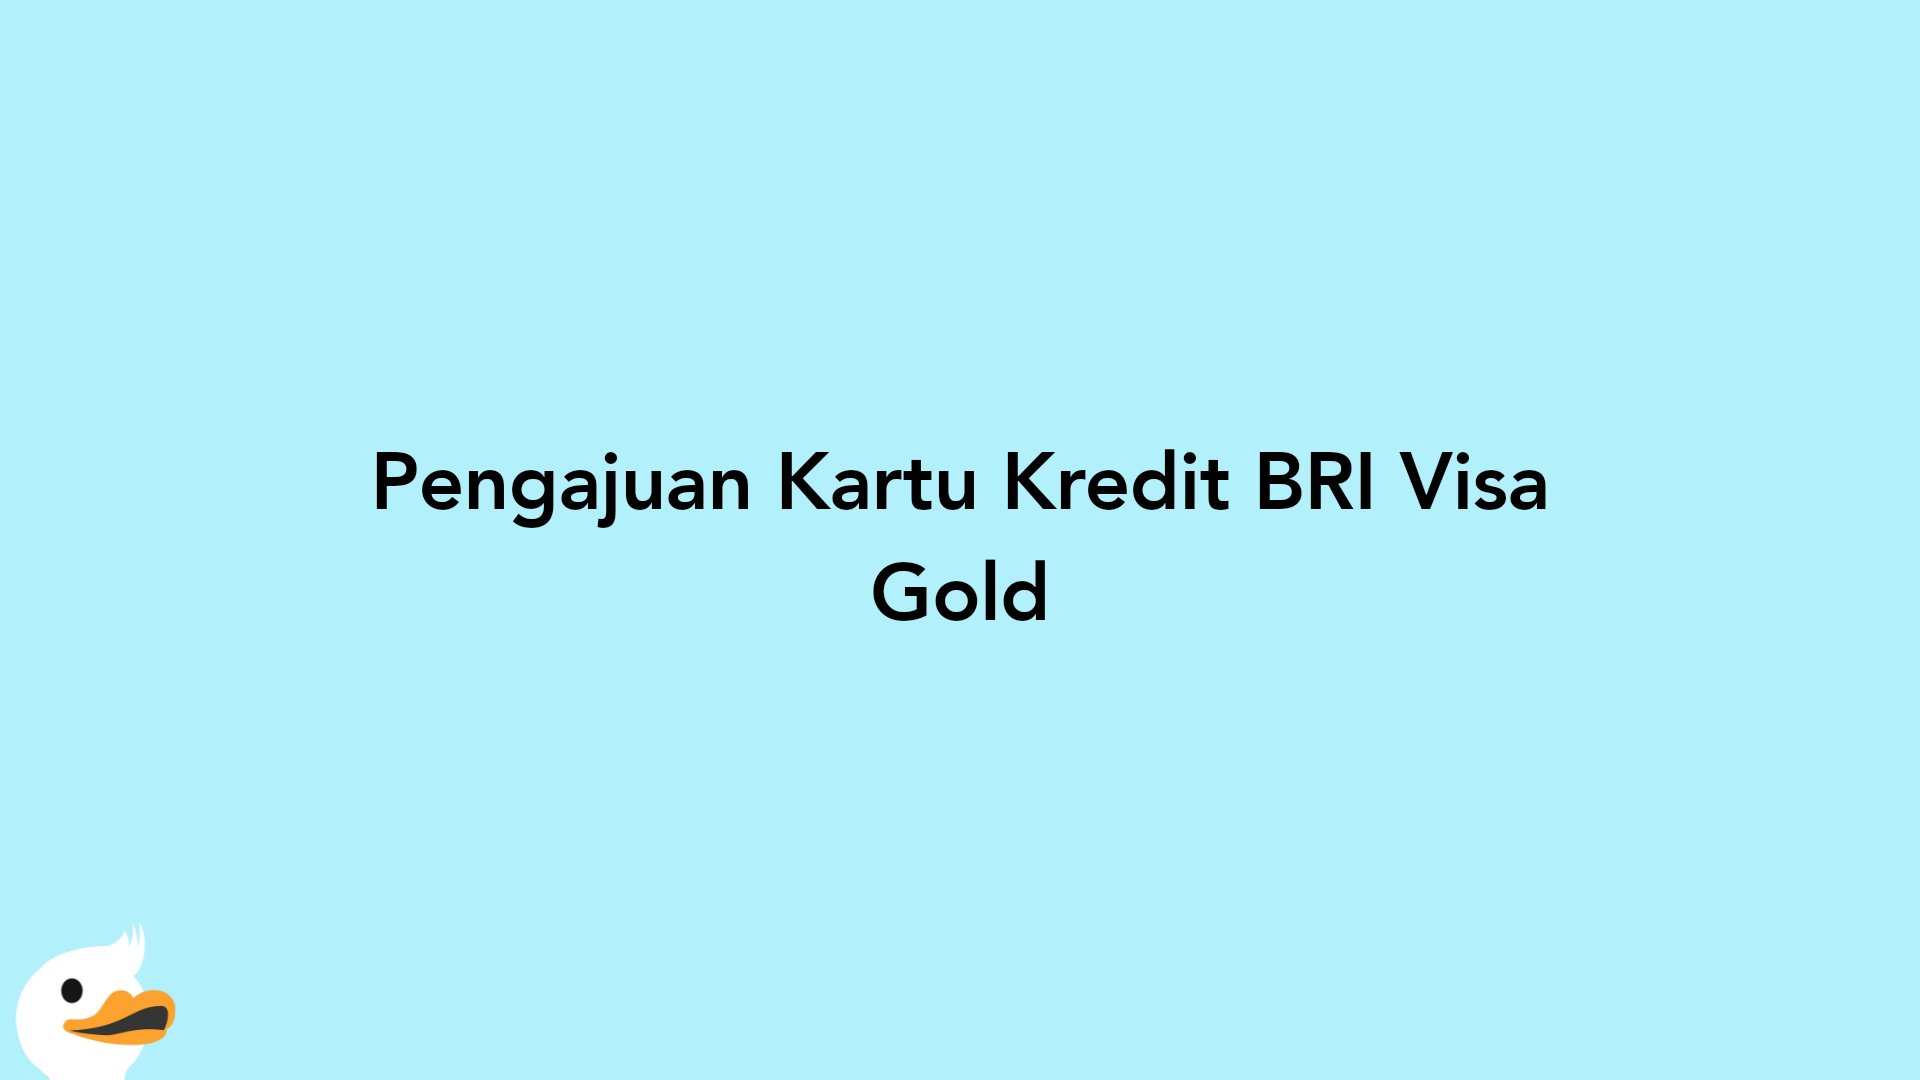 Pengajuan Kartu Kredit BRI Visa Gold